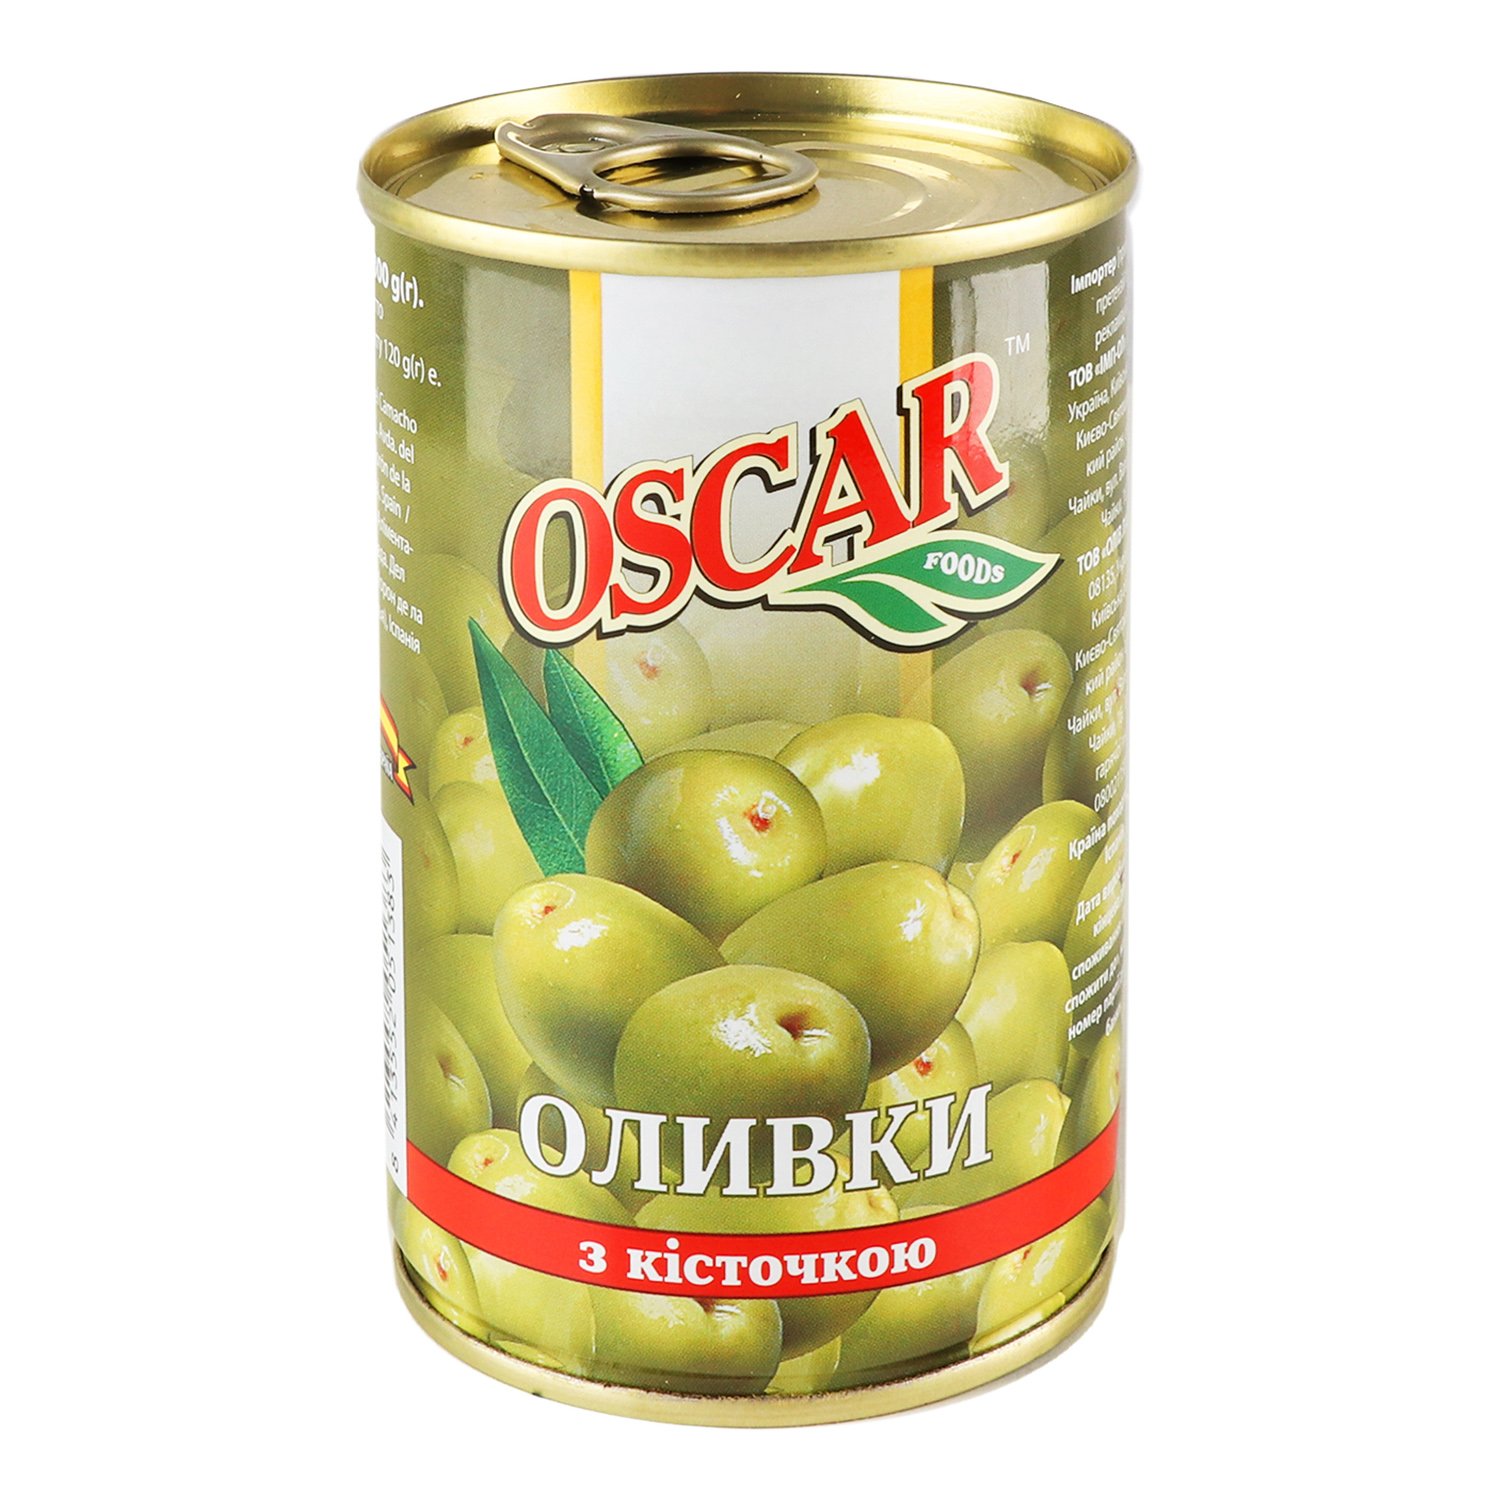 Оливки Oscar з кісточкою 300 г (914659) - фото 5